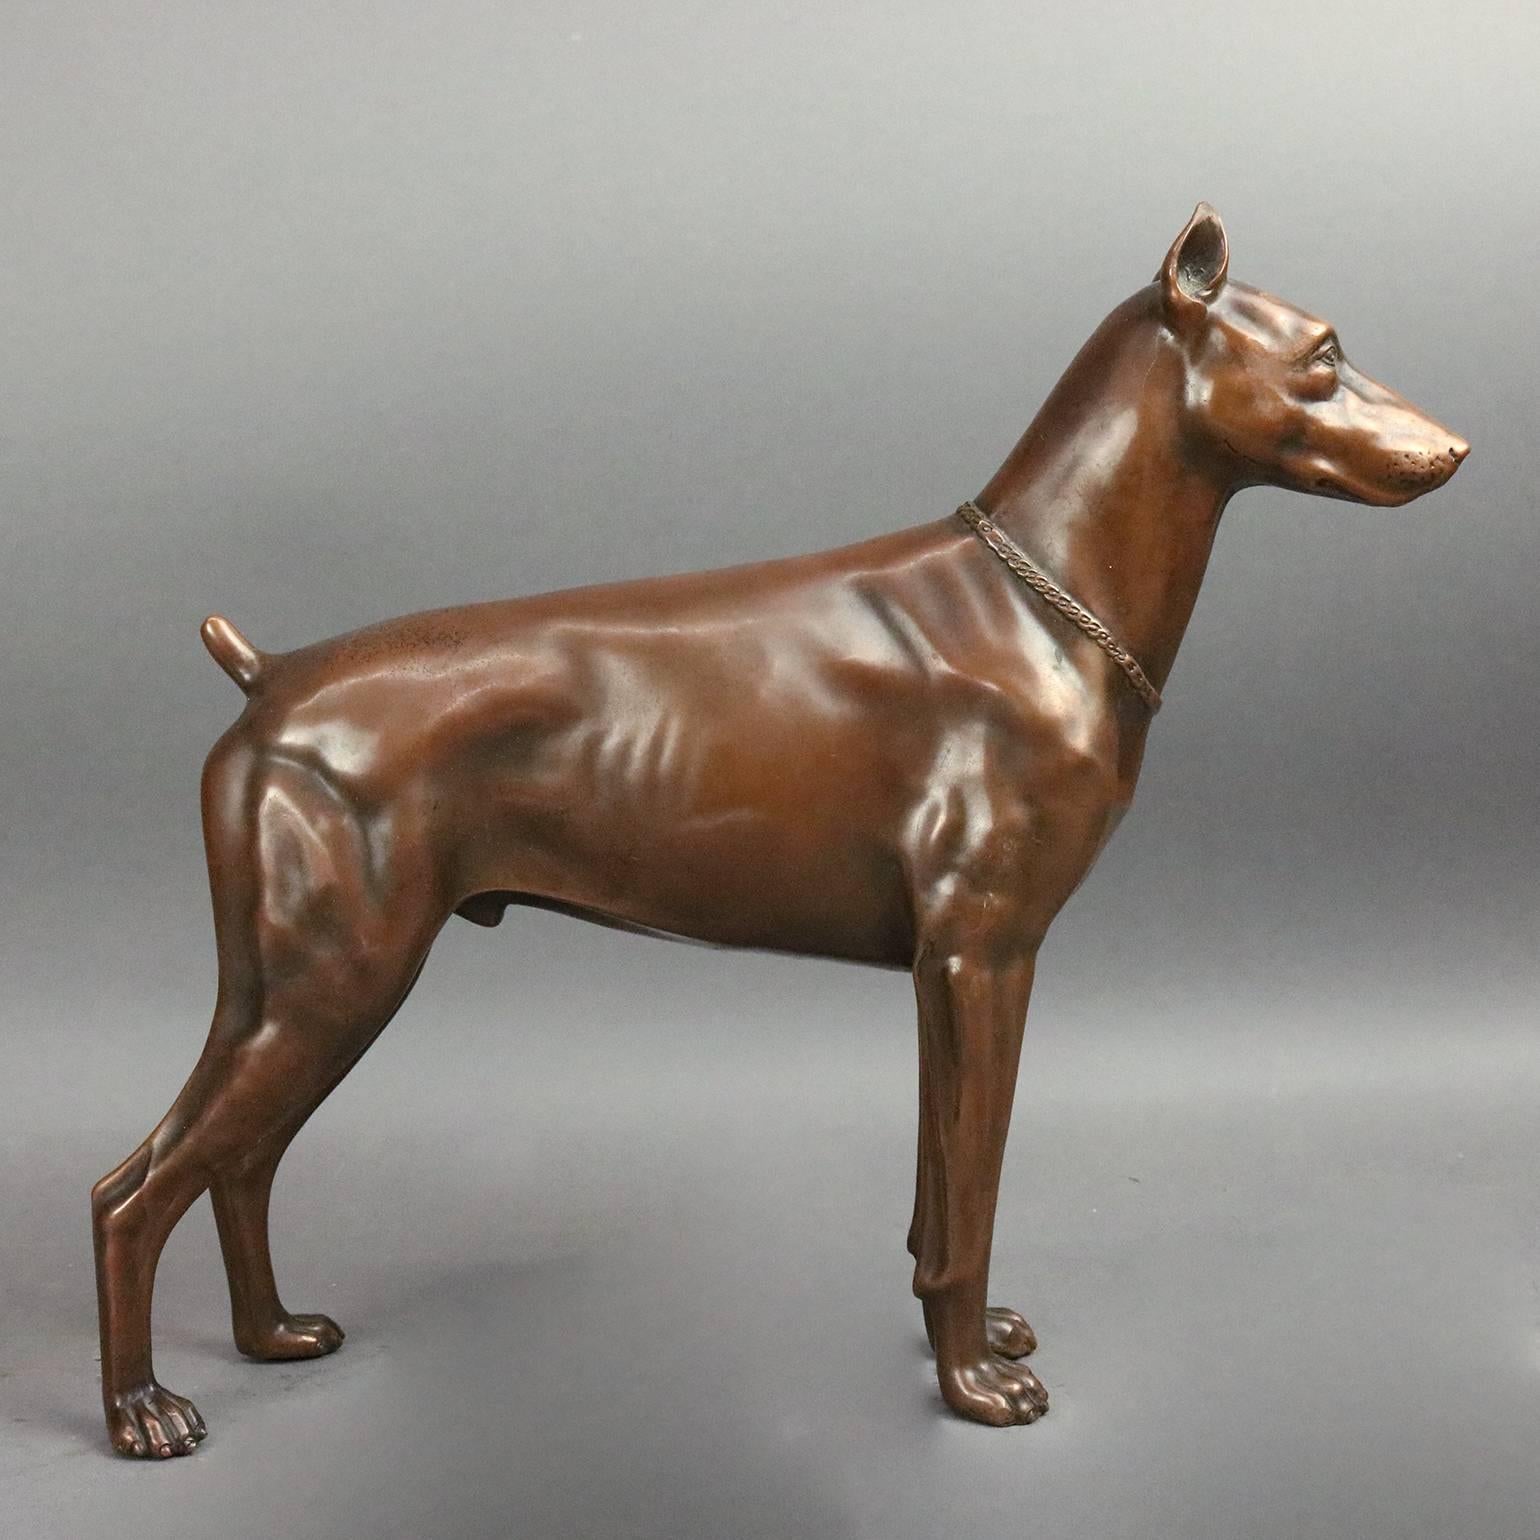 Antique bronzed cast metal statue dog, Doberman Pinscher, standing alert or on guard, hollow, circa 1900

Measures: 11" H x 12" W x 2.5" D.